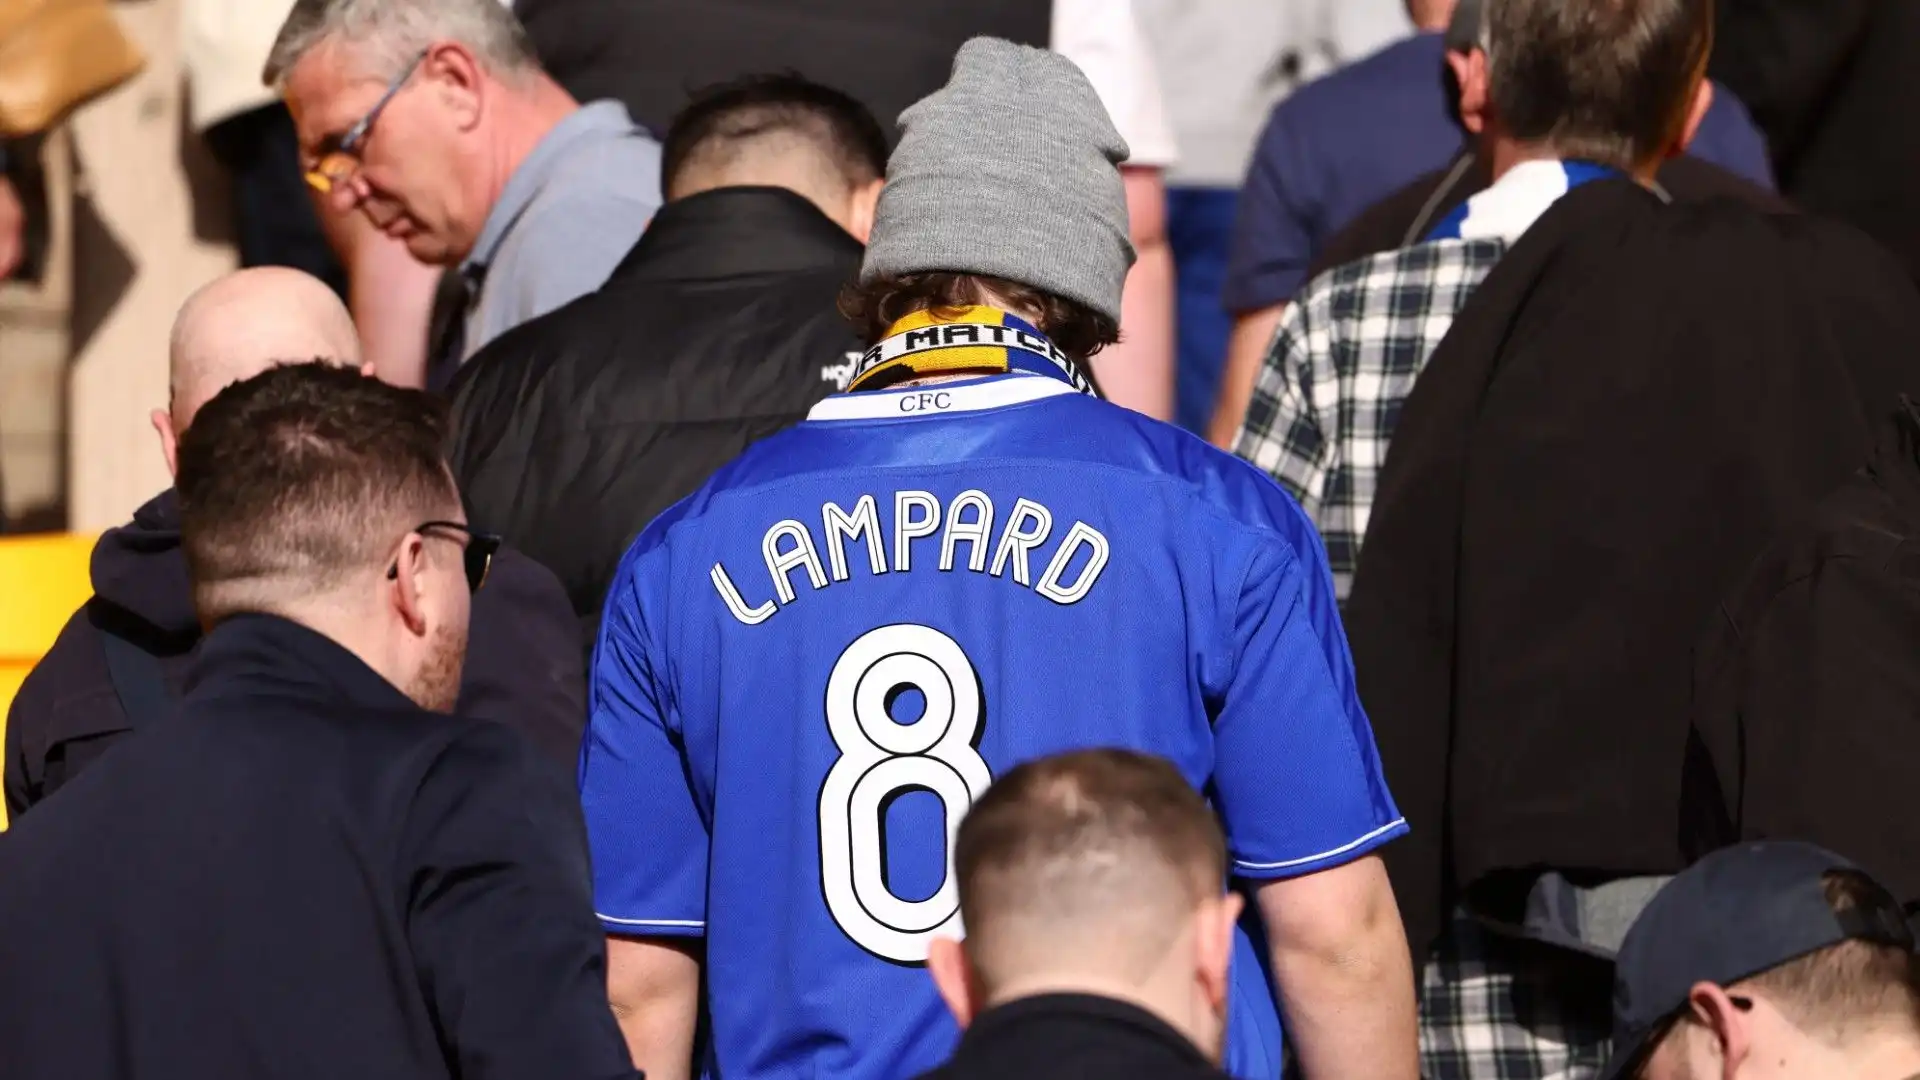 Un nostalgico tifoso ha riesumato la maglia di quando Lampard giocava nei Blues